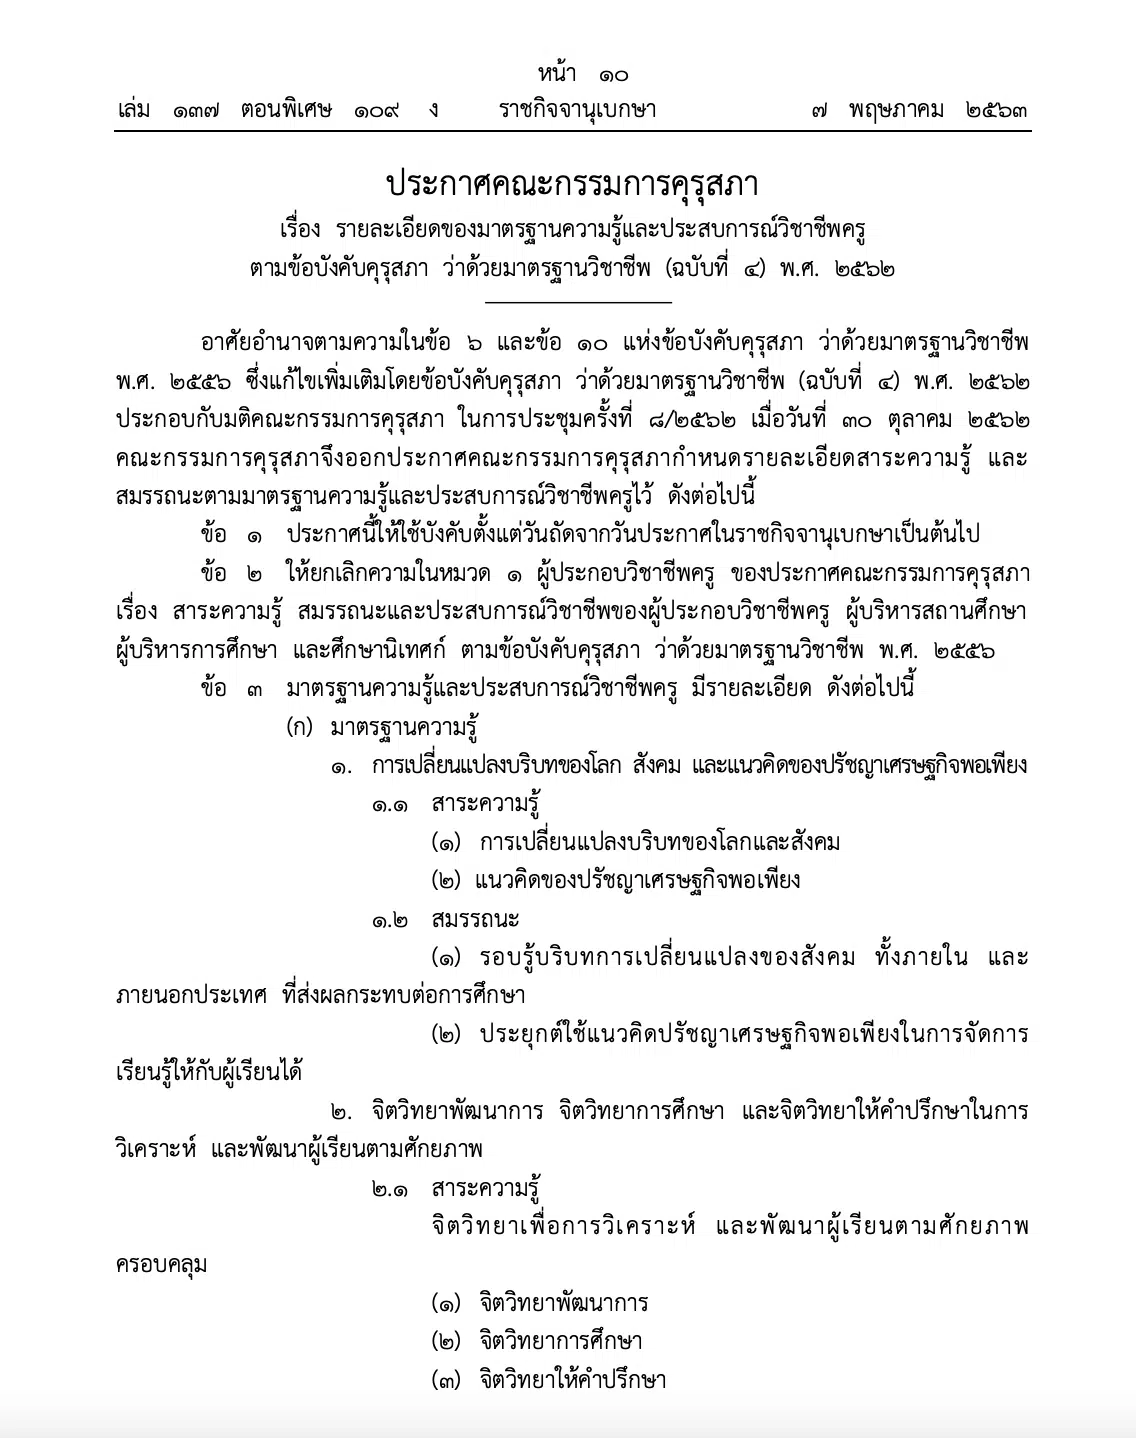 สรุปมาตรฐานวิชาชีพครู ฉบับแก้ไข ราชกิจจานุเบกษา 2562